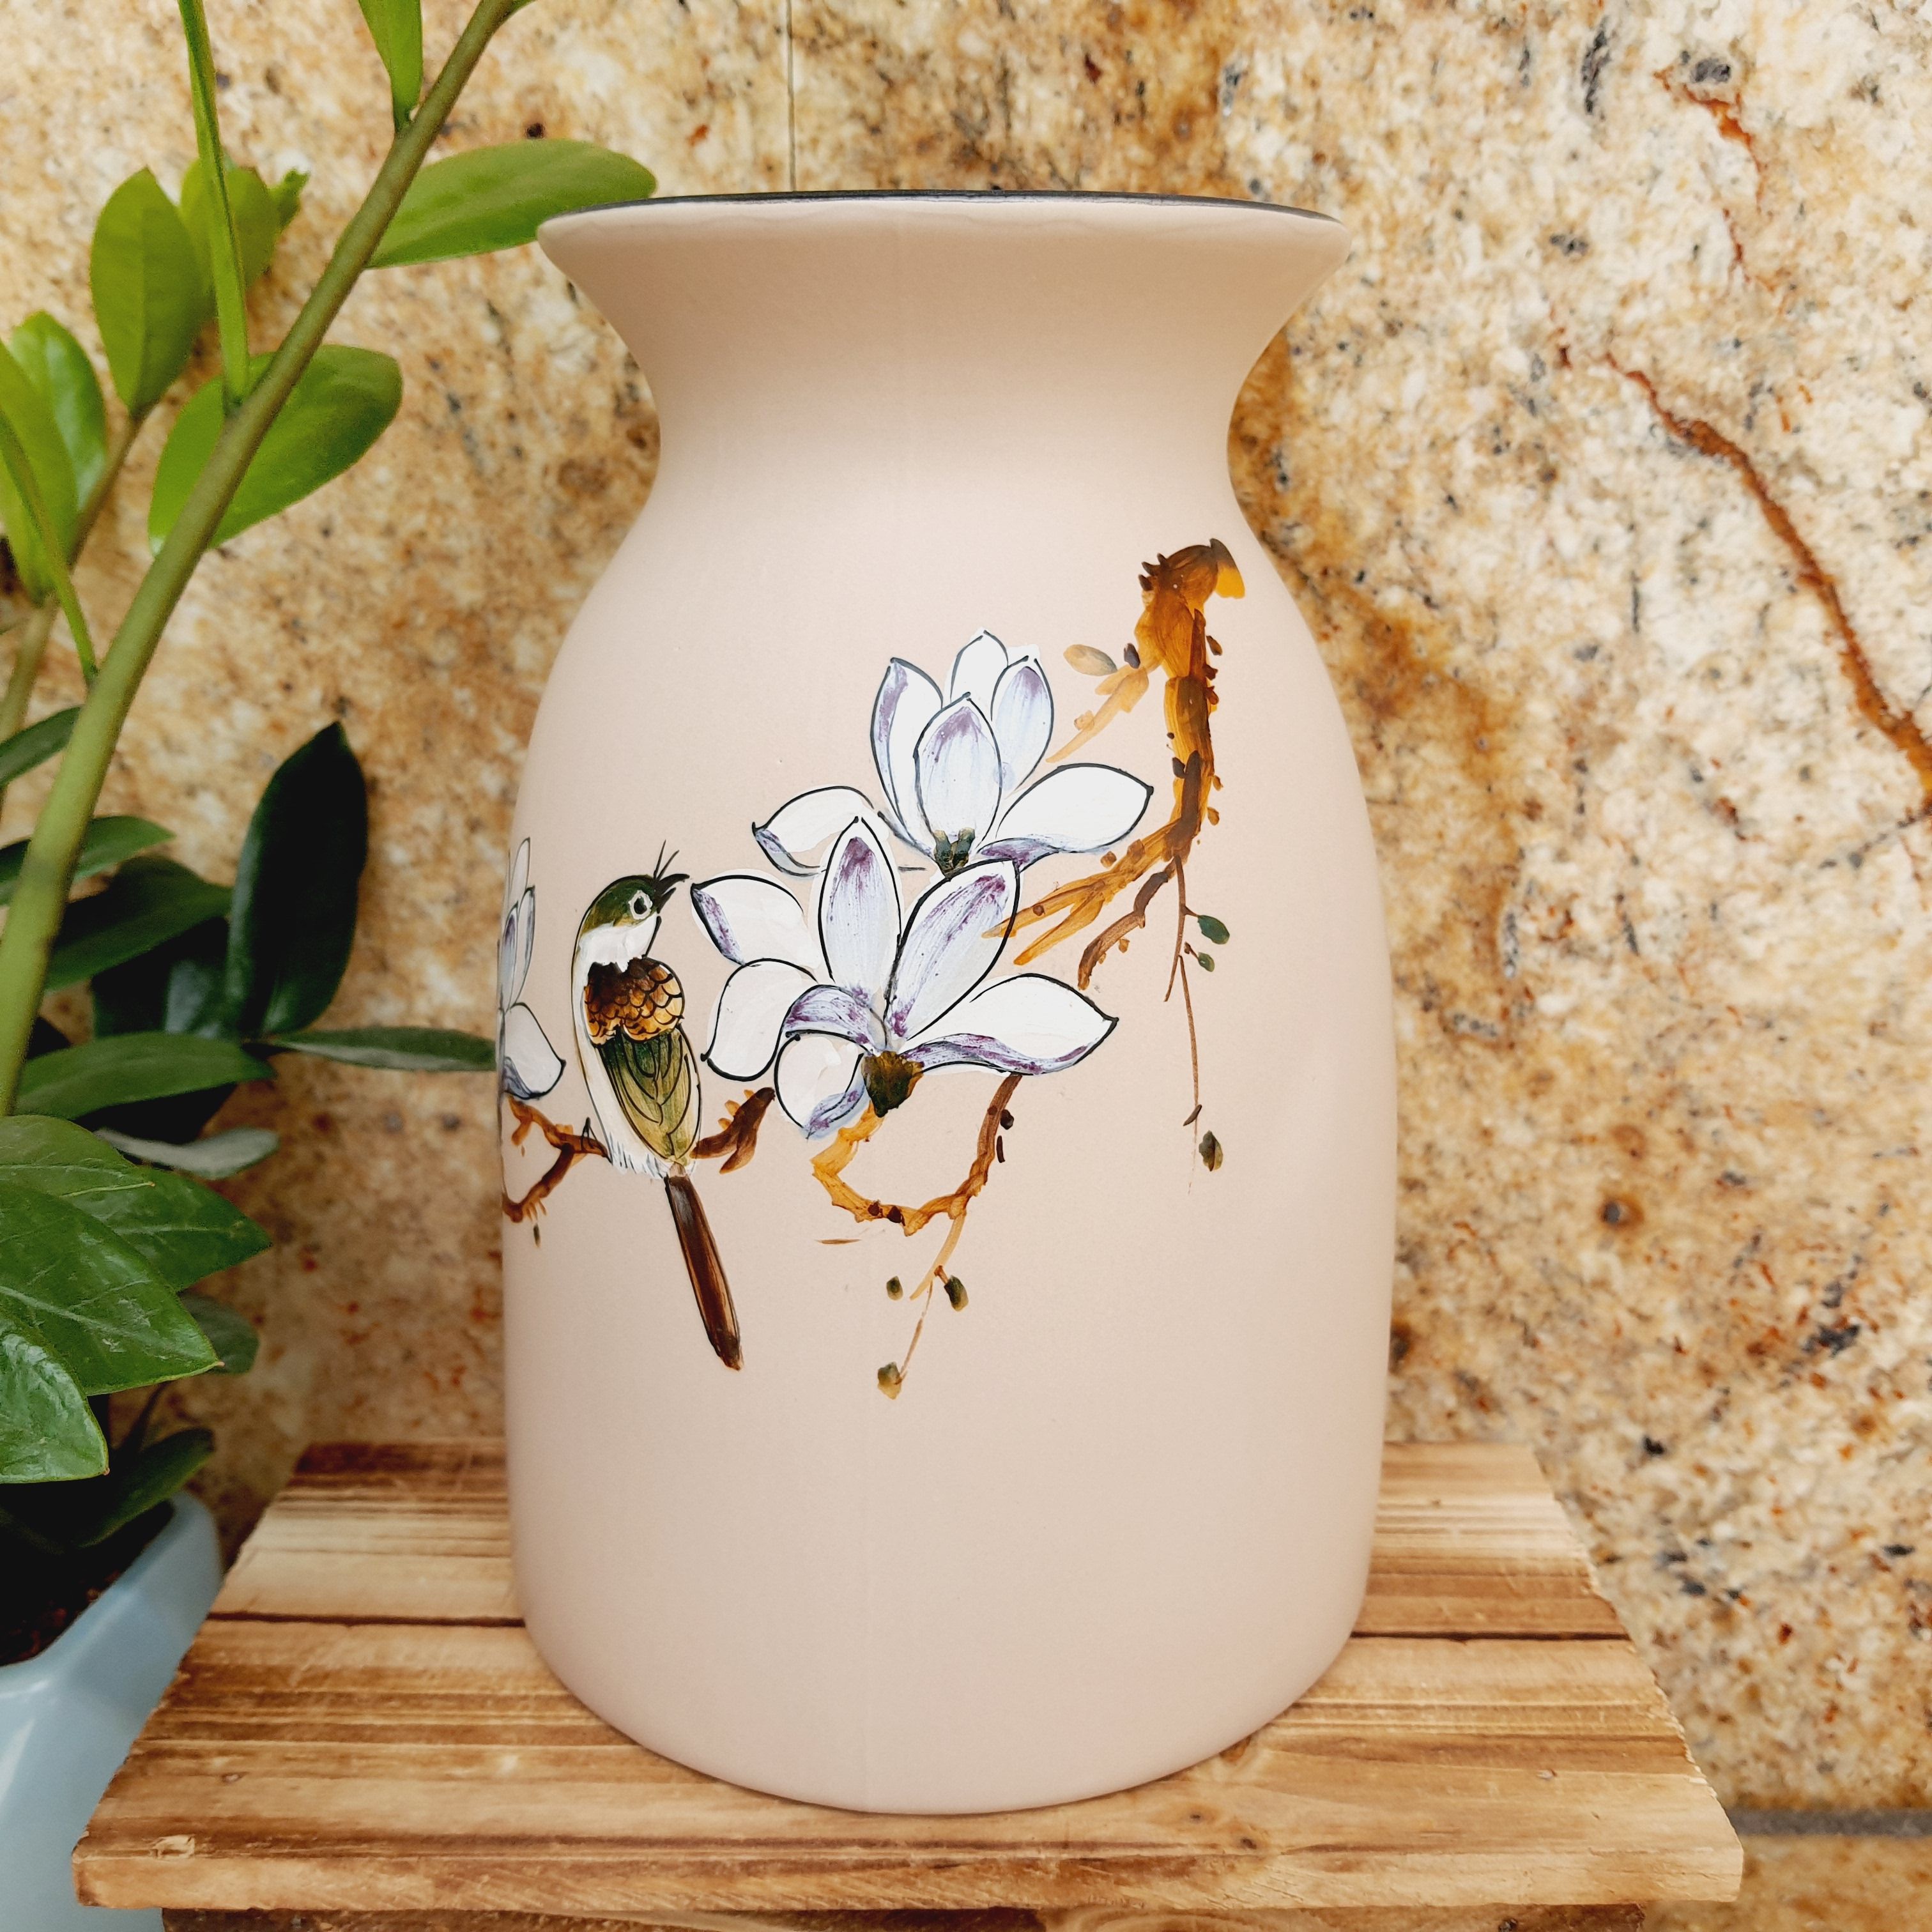 Bạn thích hoa và muốn vẽ lọ hoa đơn giản để trang trí cho nhà cửa? Hãy xem ngay hình ảnh liên quan đến từ khóa này để được học cách vẽ lọ hoa đơn giản nhưng rất tinh tế và sang trọng. Chắc chắn bạn sẽ thích mê!